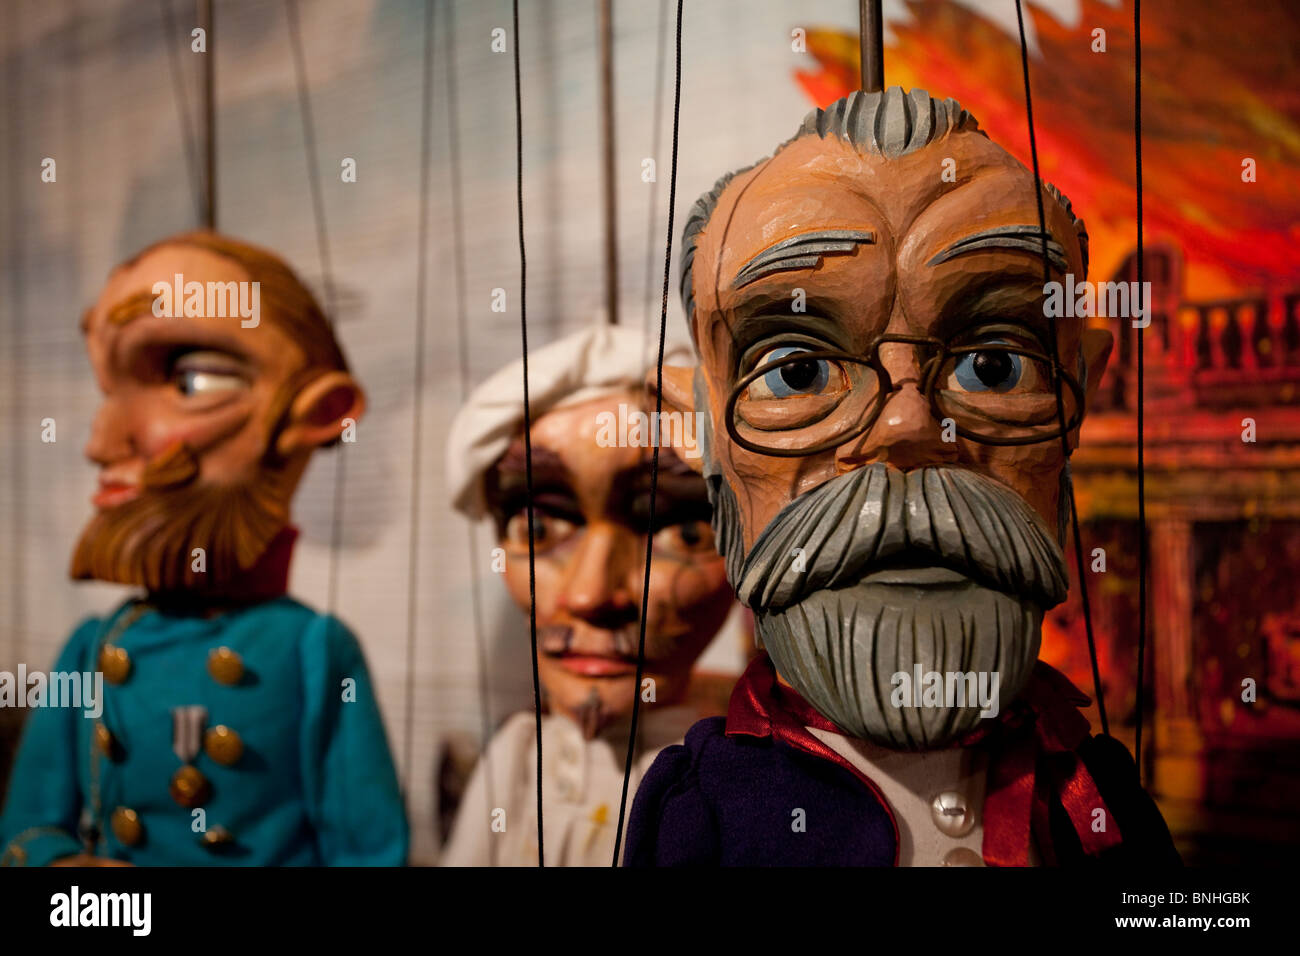 Marionette marionette esposte presso il museo delle marionette che mira a promuovere spettacoli di burattini come una tecnica comunicativa forma che si trova nella città di Holon Israele Foto Stock